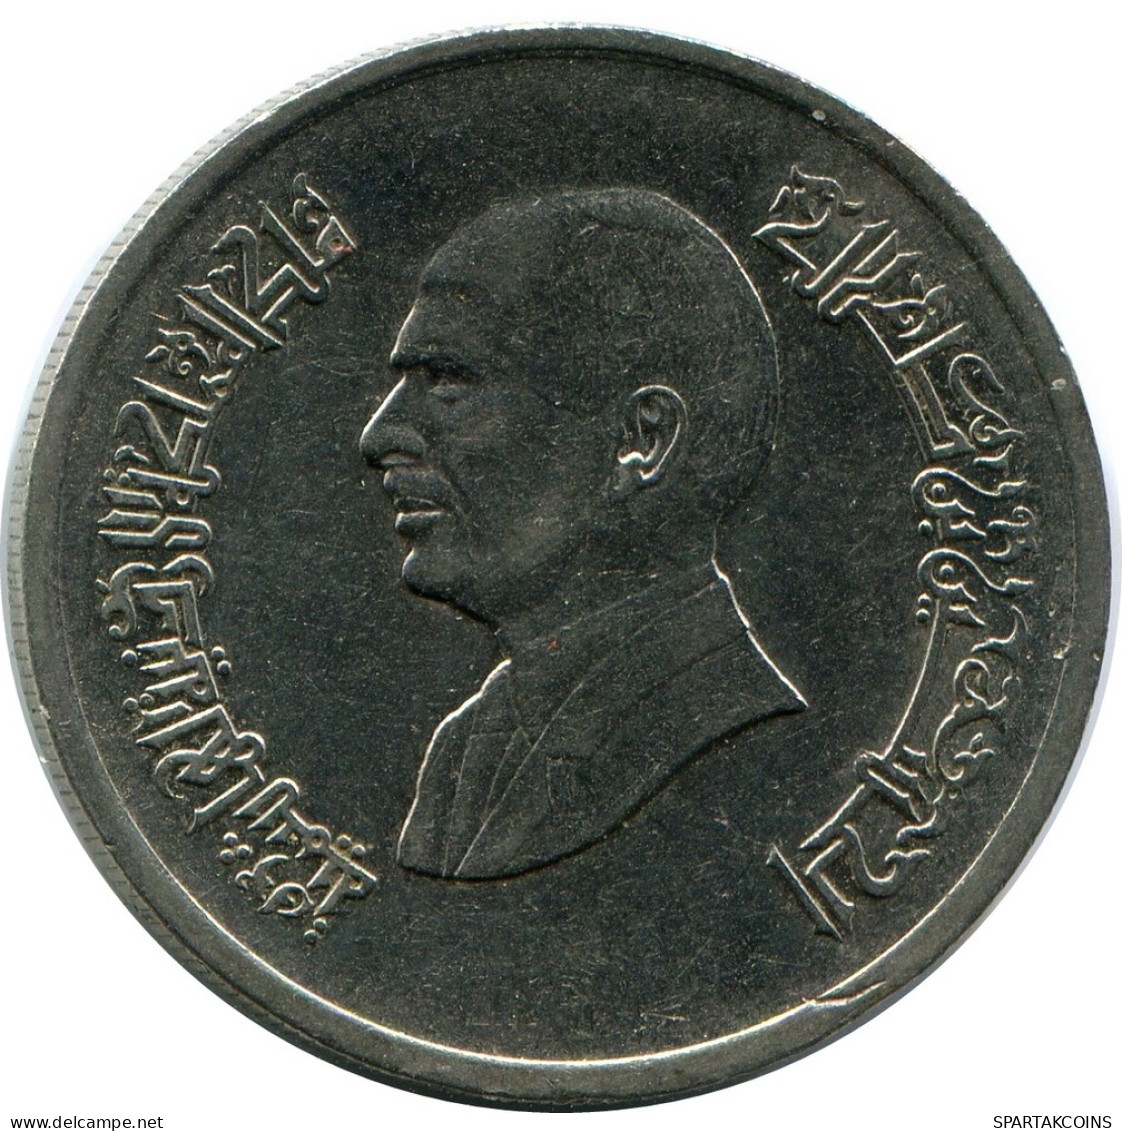 5 PIASTRES 1998 JORDAN Coin #AP401.U - Jordanien